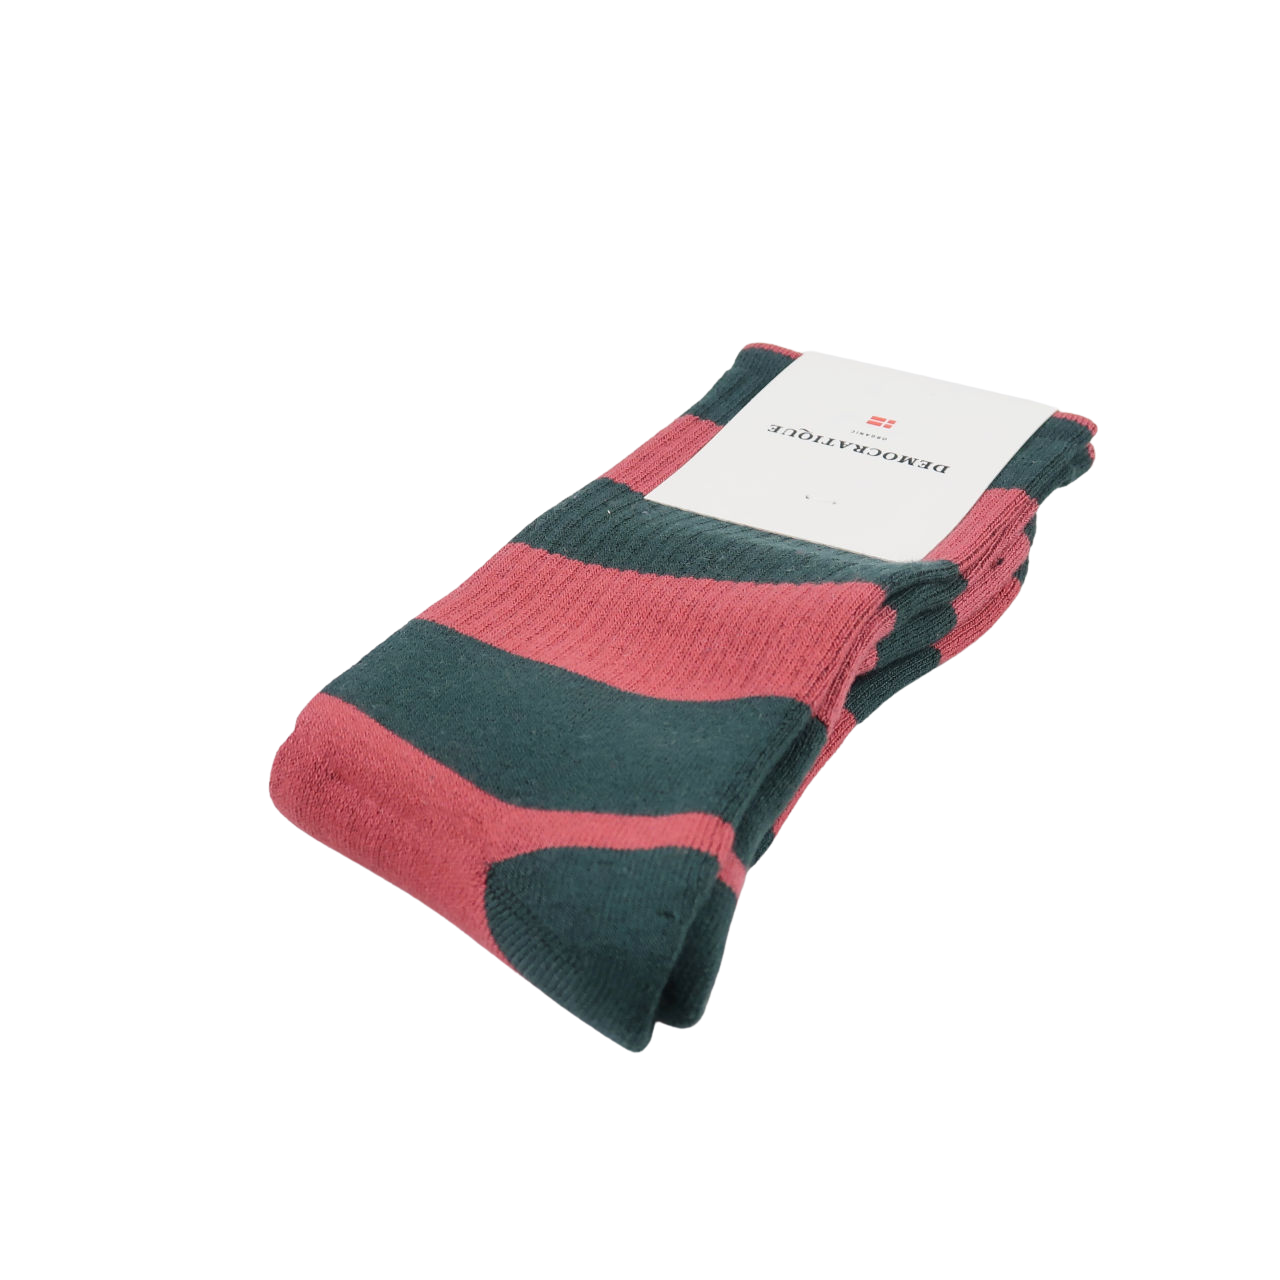 Democratique Socks Men's Socks - Rugby Stripes - Forest Green/Light Rosso